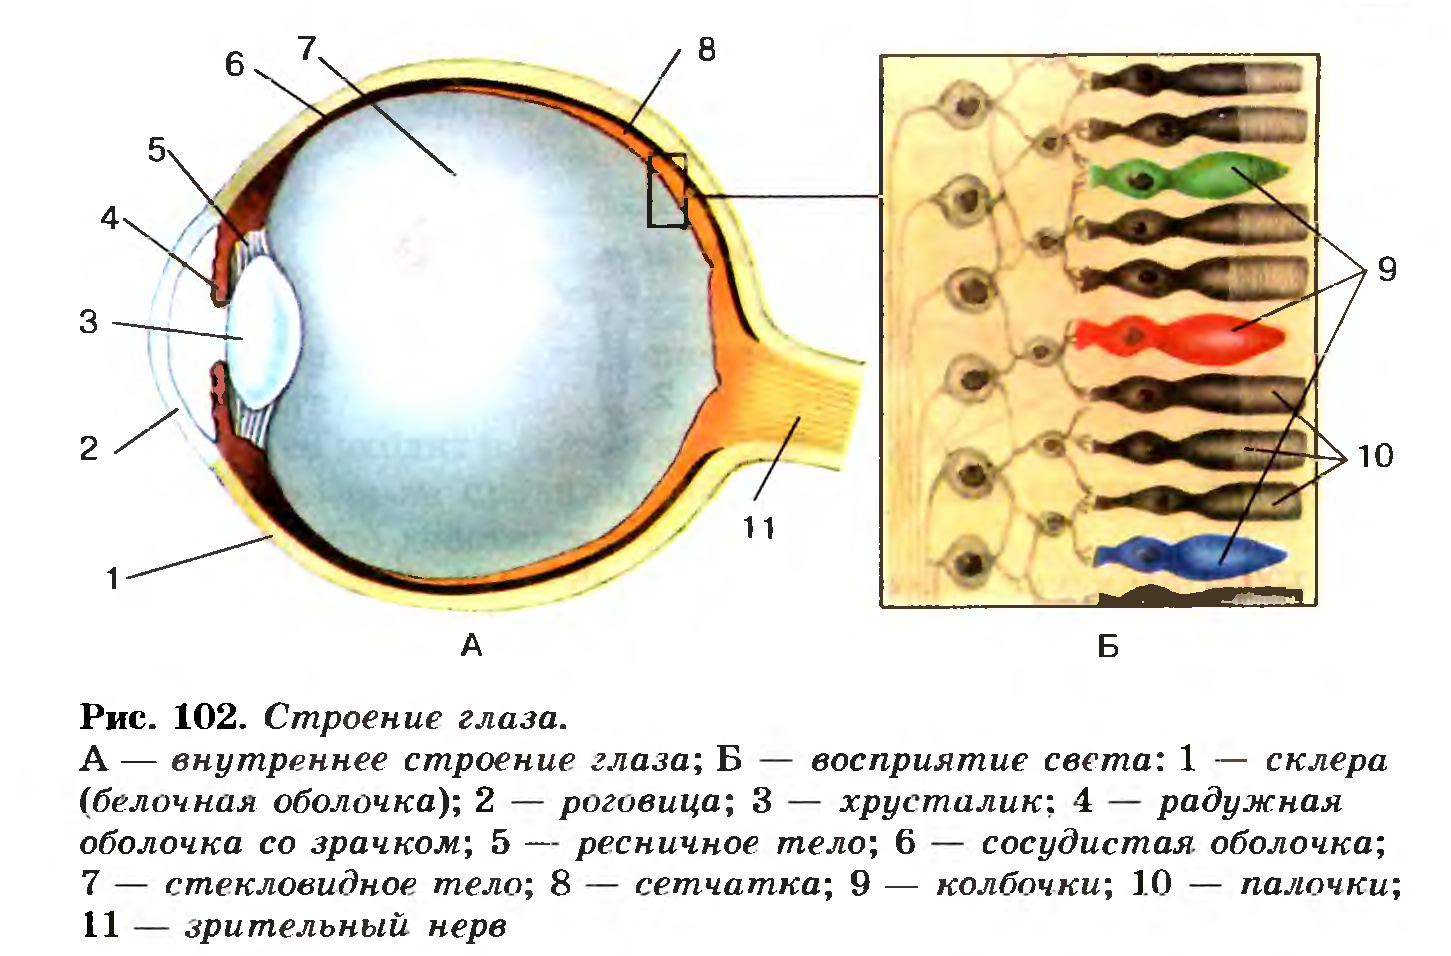 Биология строение глаза человека. Строение глаза колбочки и палочки. Строение глазного яблока биология 8 класс. Биология 8 класс структура глаза человека. Палочки и колбочки сетчатки глаза расположены.